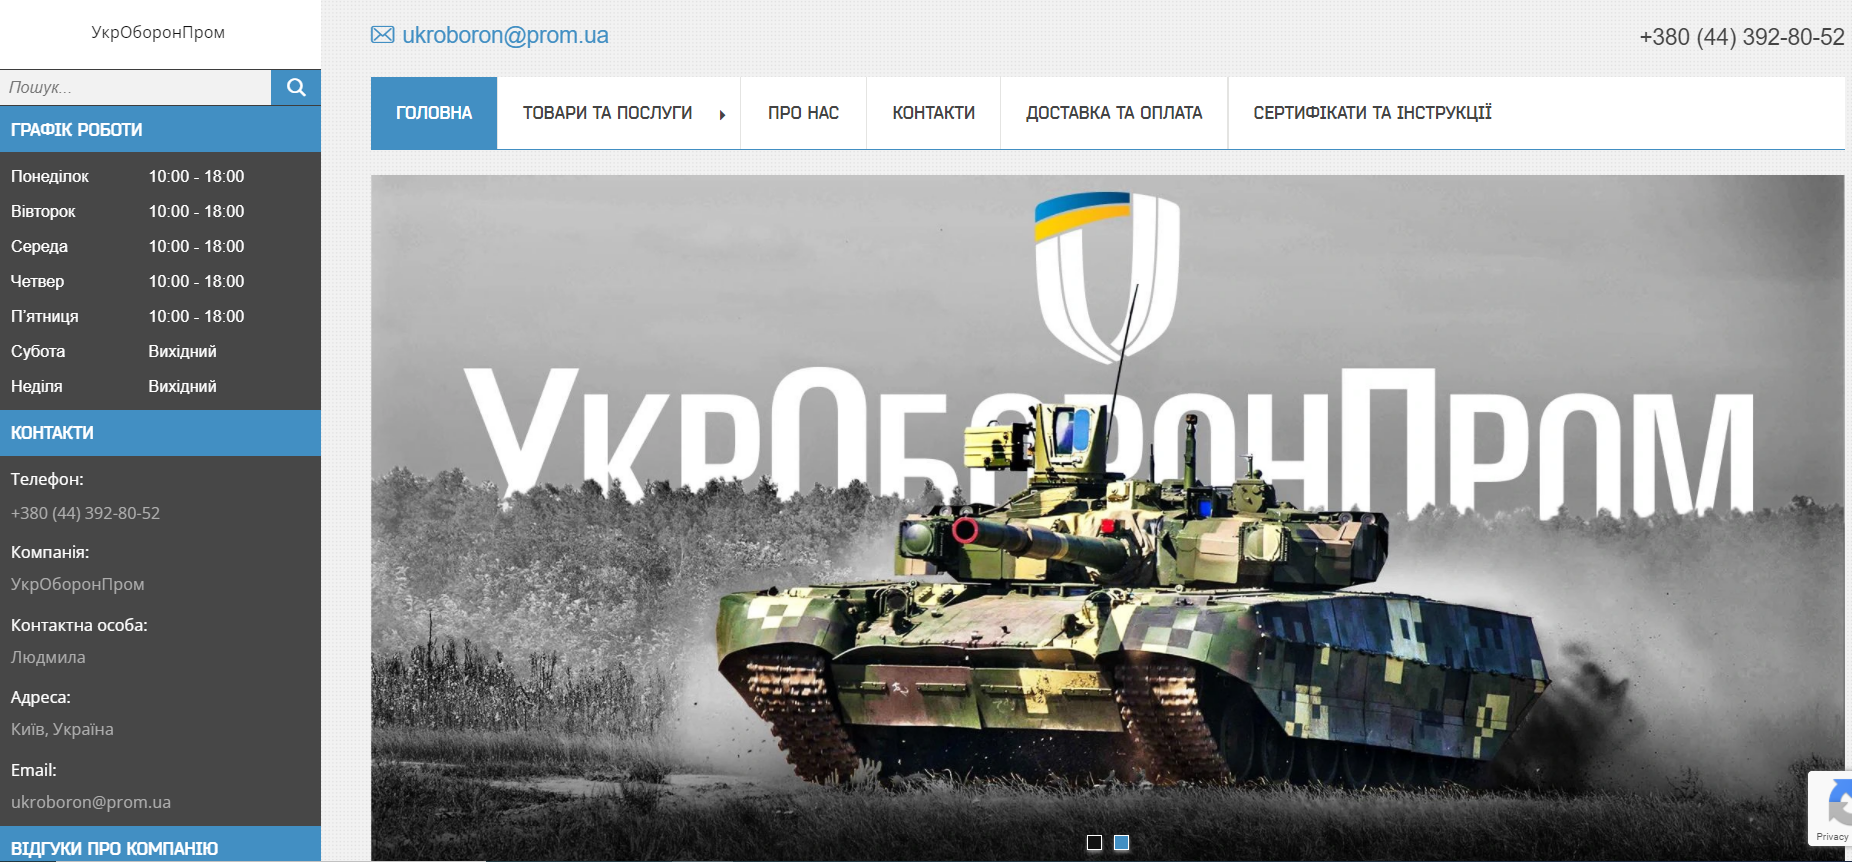 Prom.ua на замовлення Укроборонпрому запустив онлайн-магазин для волонтерів